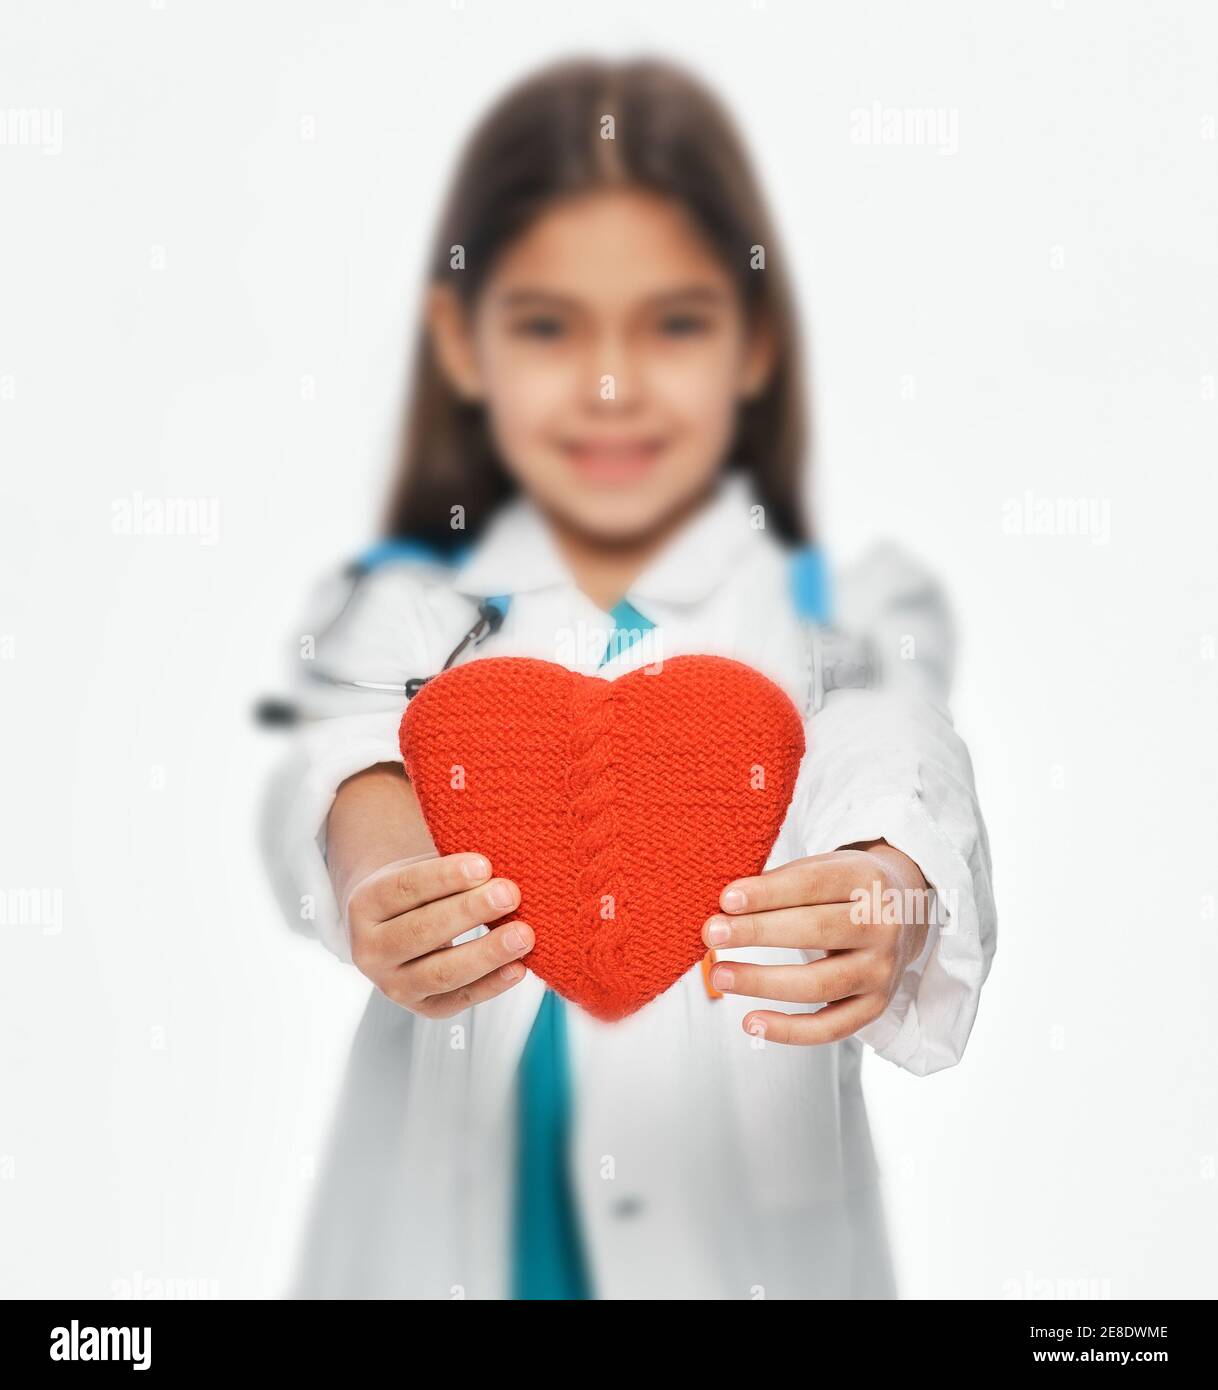 Weibliches Kind, das einen medizinischen Mantel trägt, der die Form eines Herzens vor sich hält. Konzept für die Gesundheit des Kindes im Herzen. Weichfokus Stockfoto